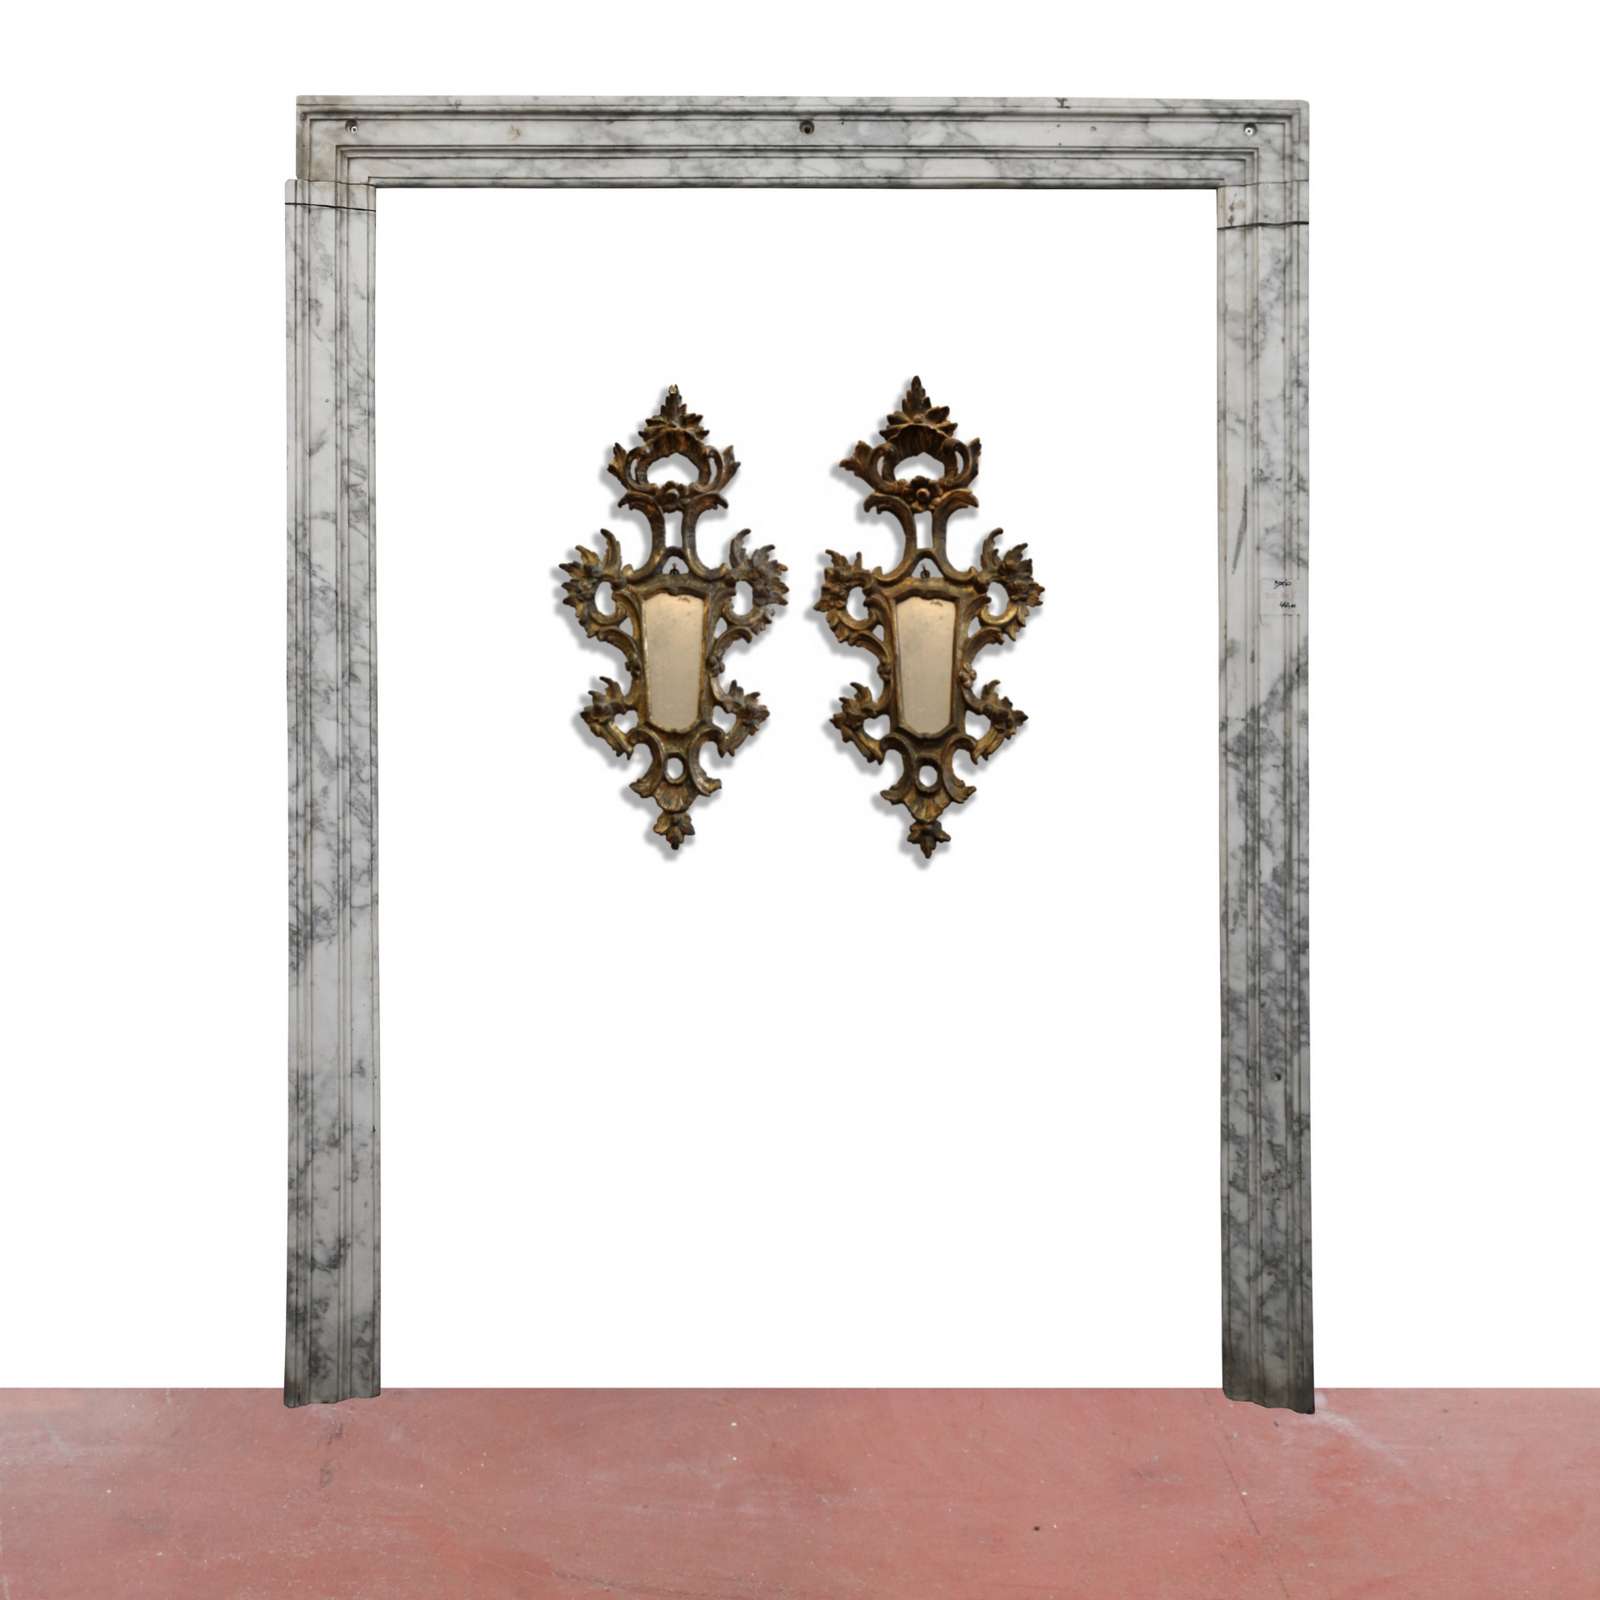 Antico portale in marmo. Epoca 1800. - Portali, Finestre e Cornici - Architettura - Prodotti - Antichità Fiorillo